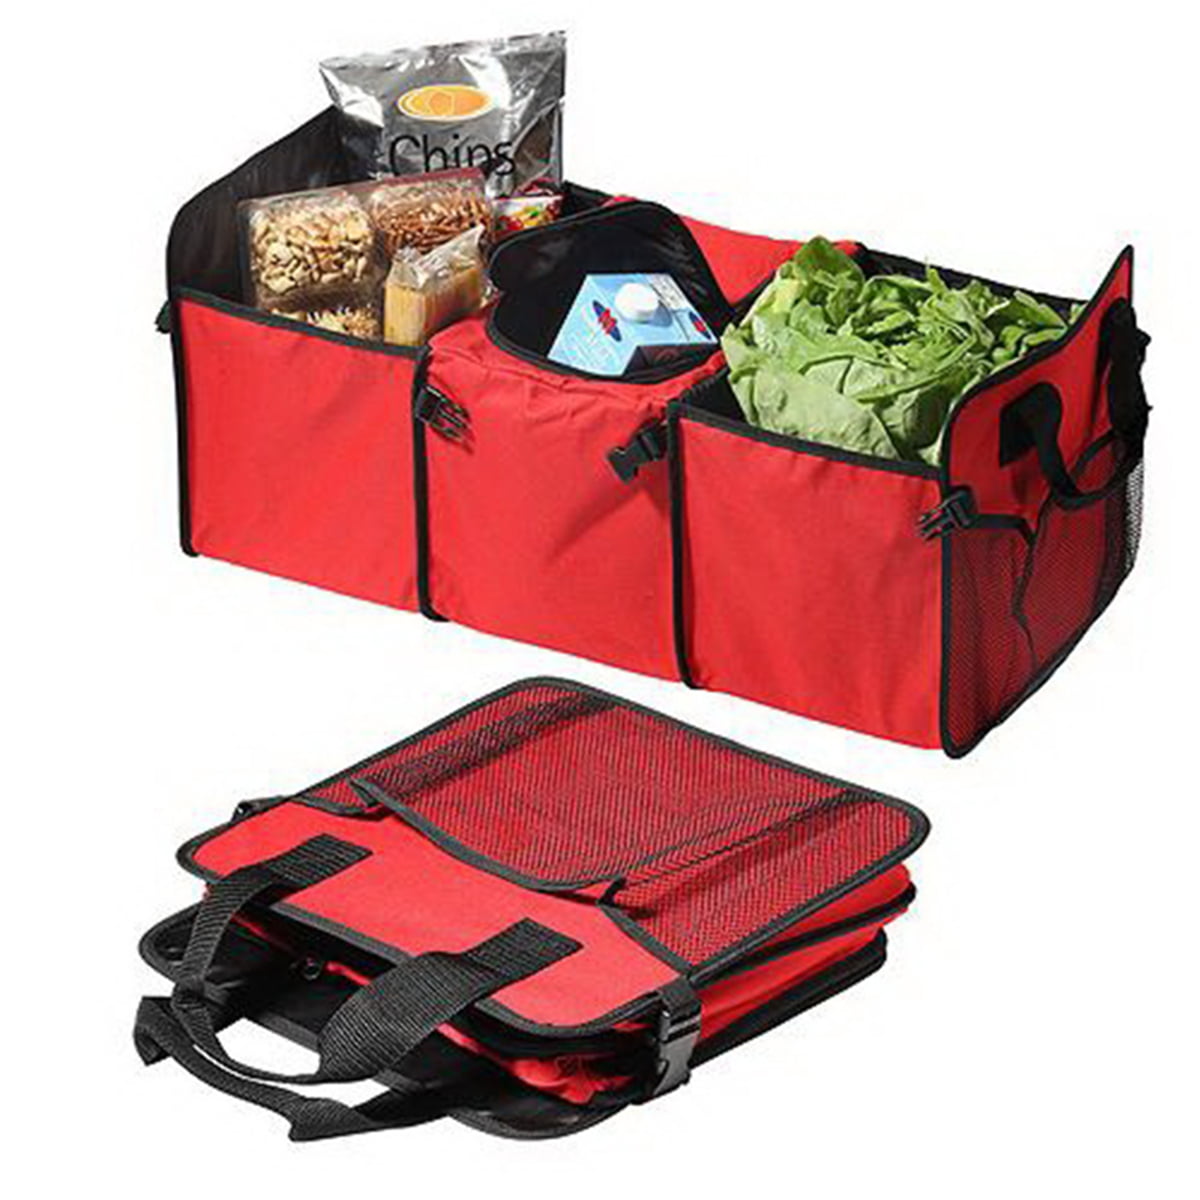 Car Trunk Cargo Storage Bag Organizer Foldable Holder Bin Box Cooler Grocer V7G3